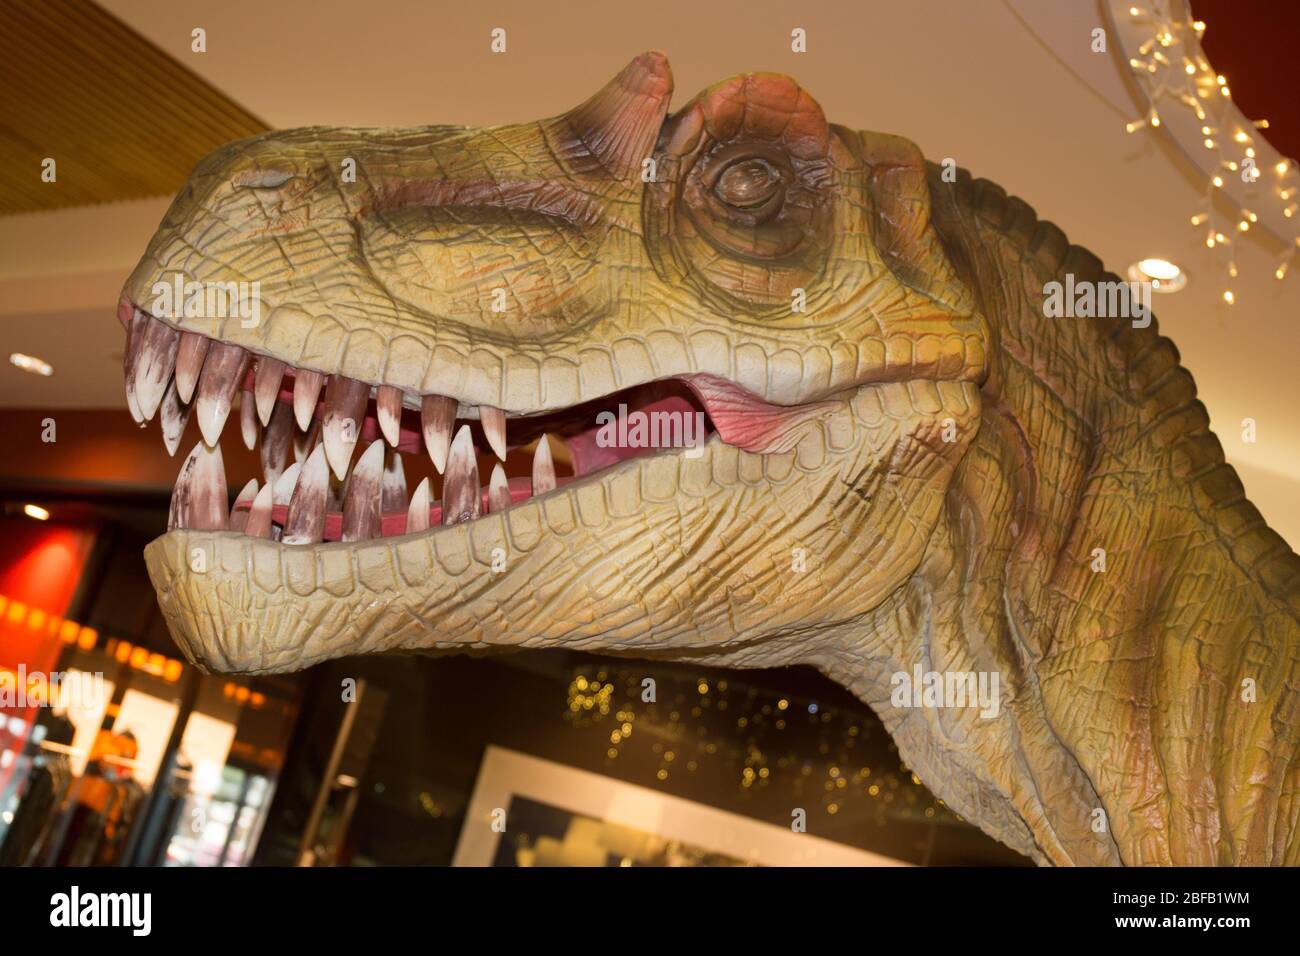 dans le musée trex dinosaure avec grand visage Banque D'Images